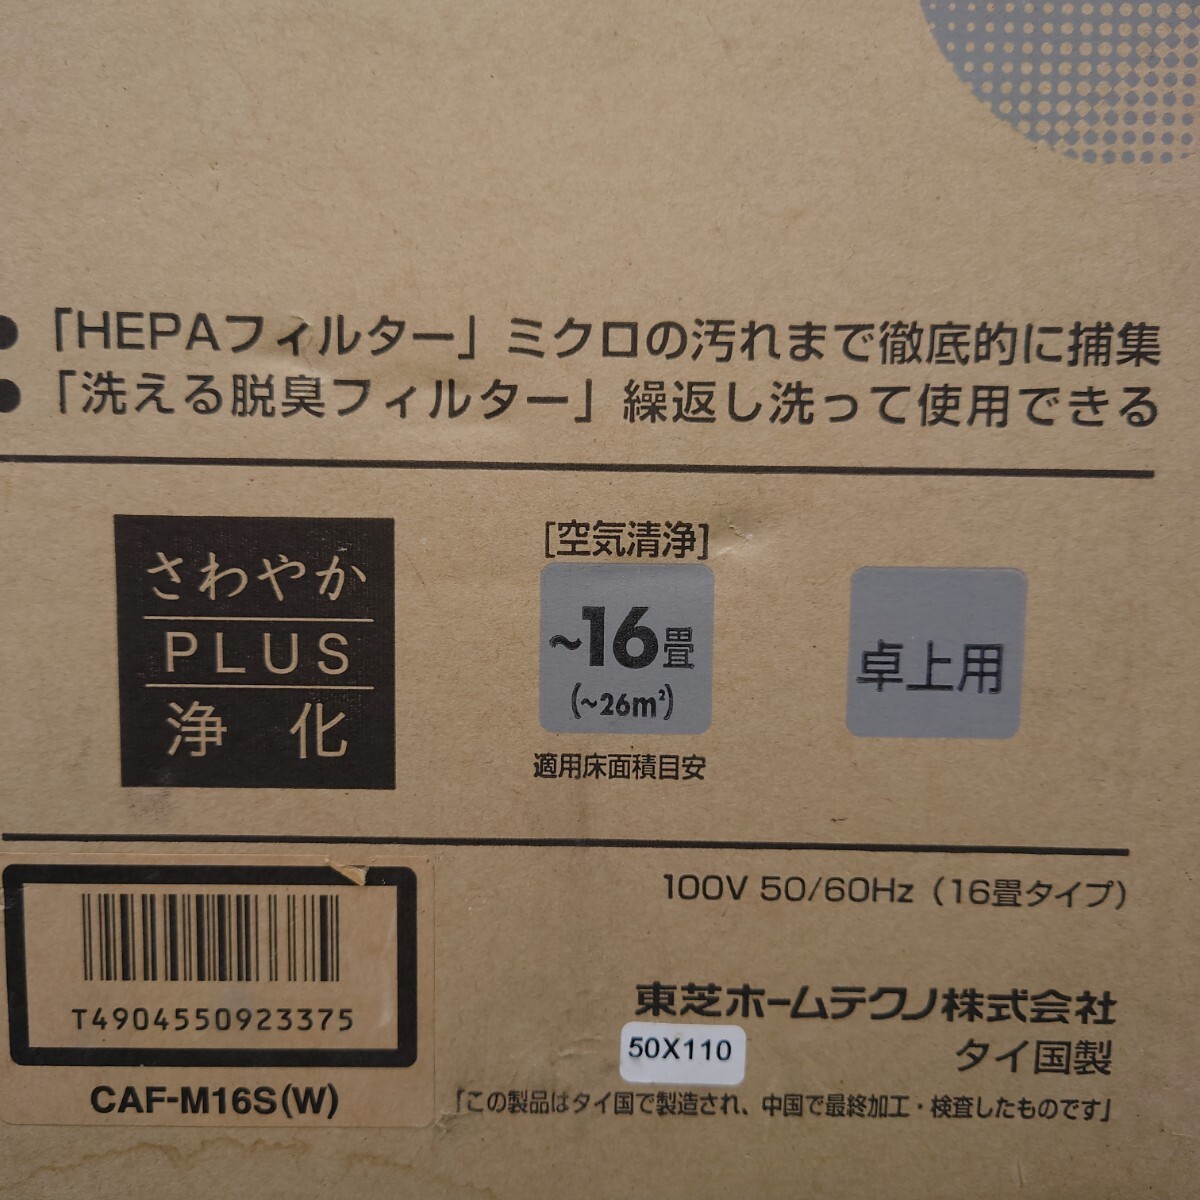 【 неиспользуемый 】 TOSHIBA  очиститель воздуха  CAF-M16S  белый  【 передача в текущем состоянии 】